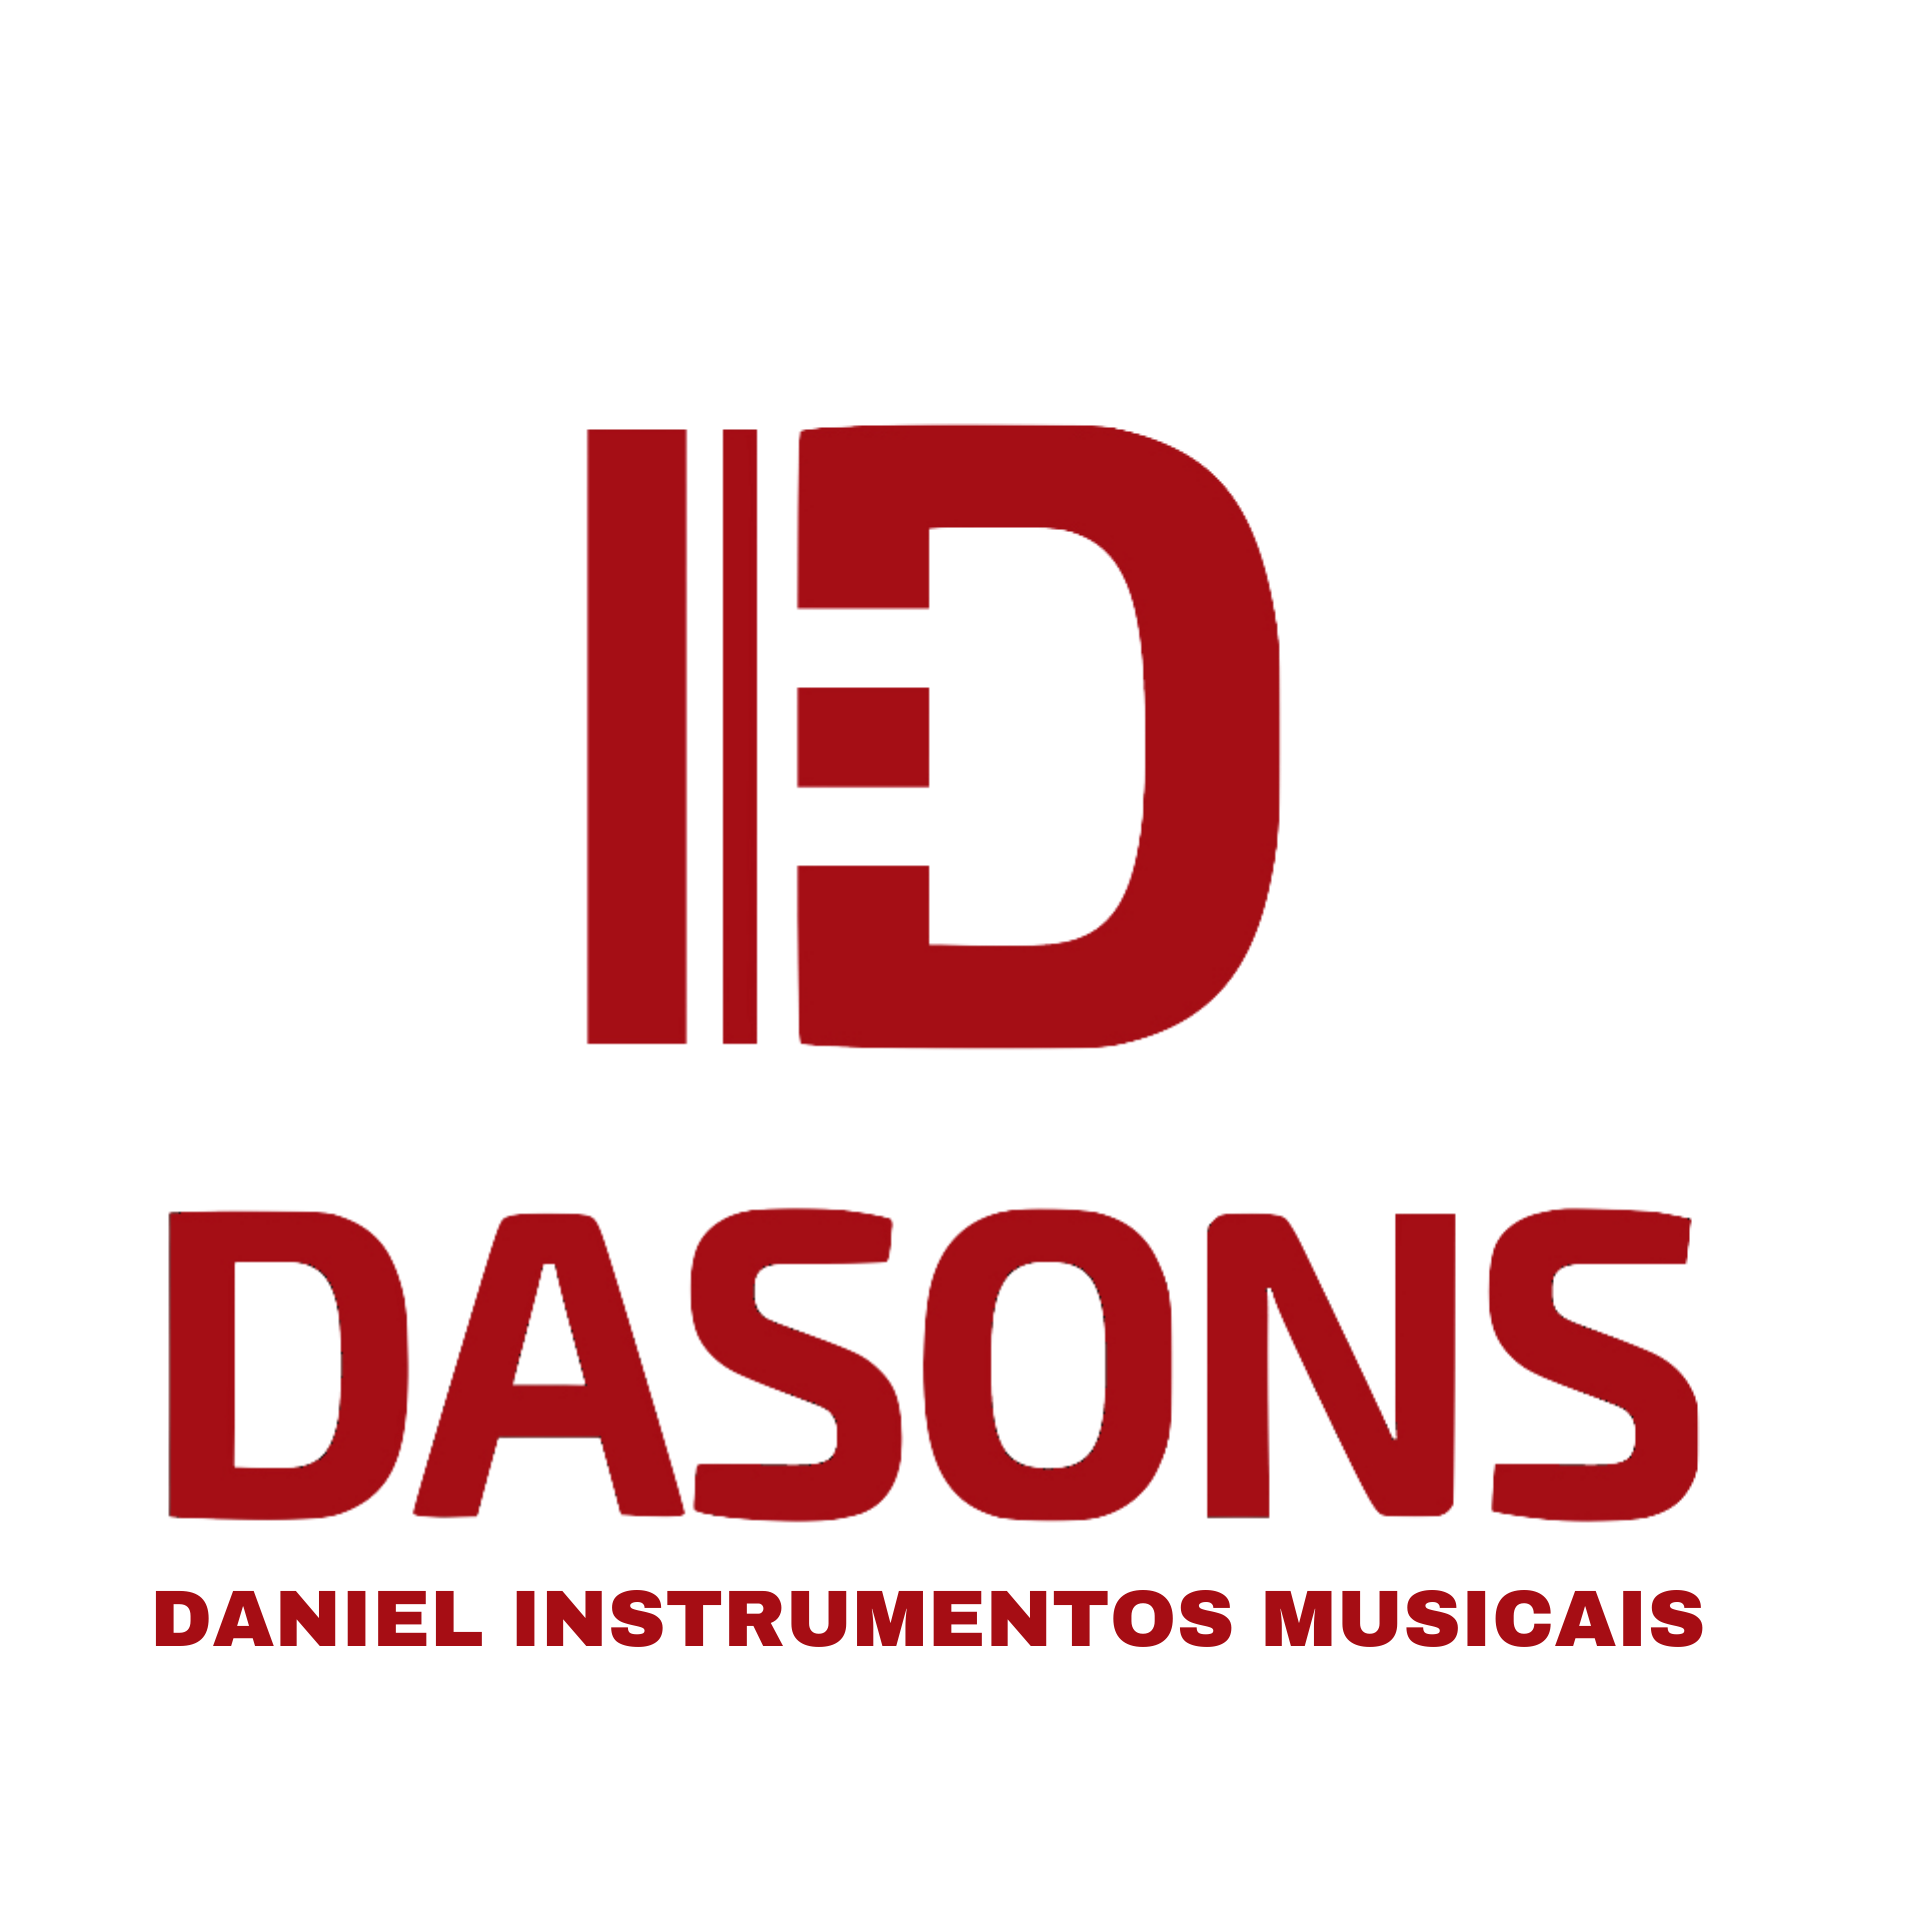 DASONS - Daniel Instrumentos Musicais